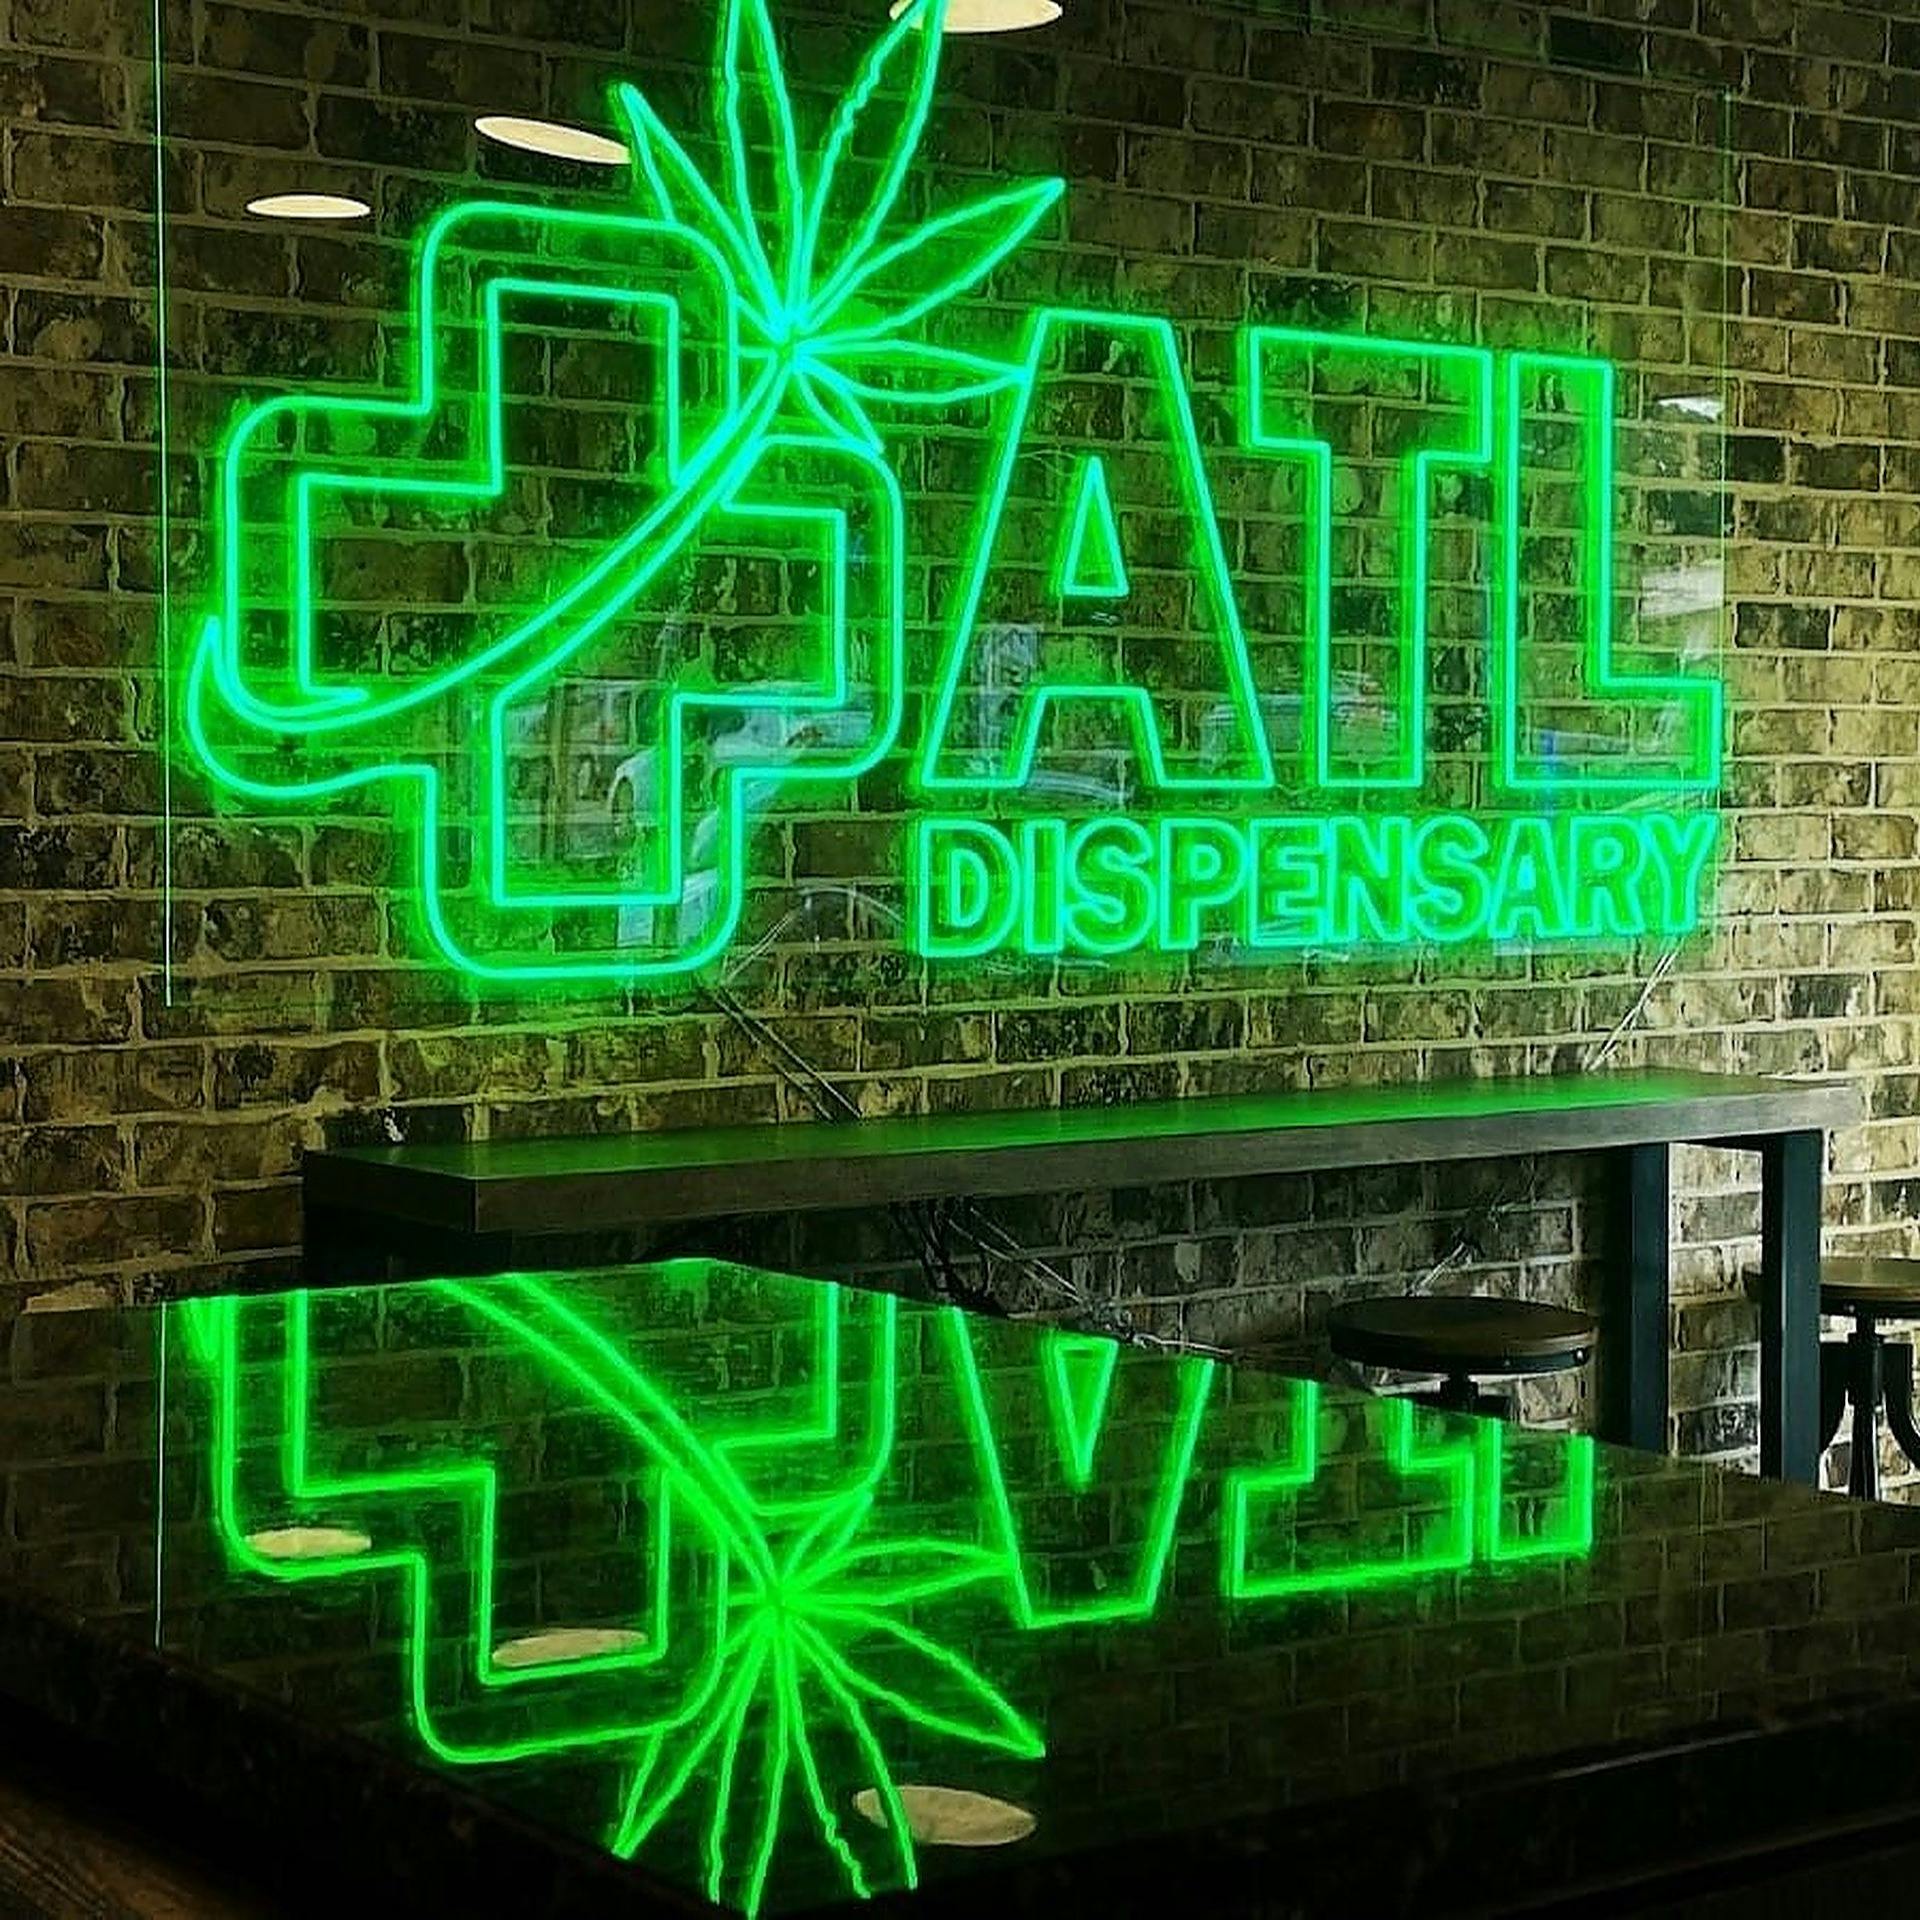 Atlanta dispensary near me